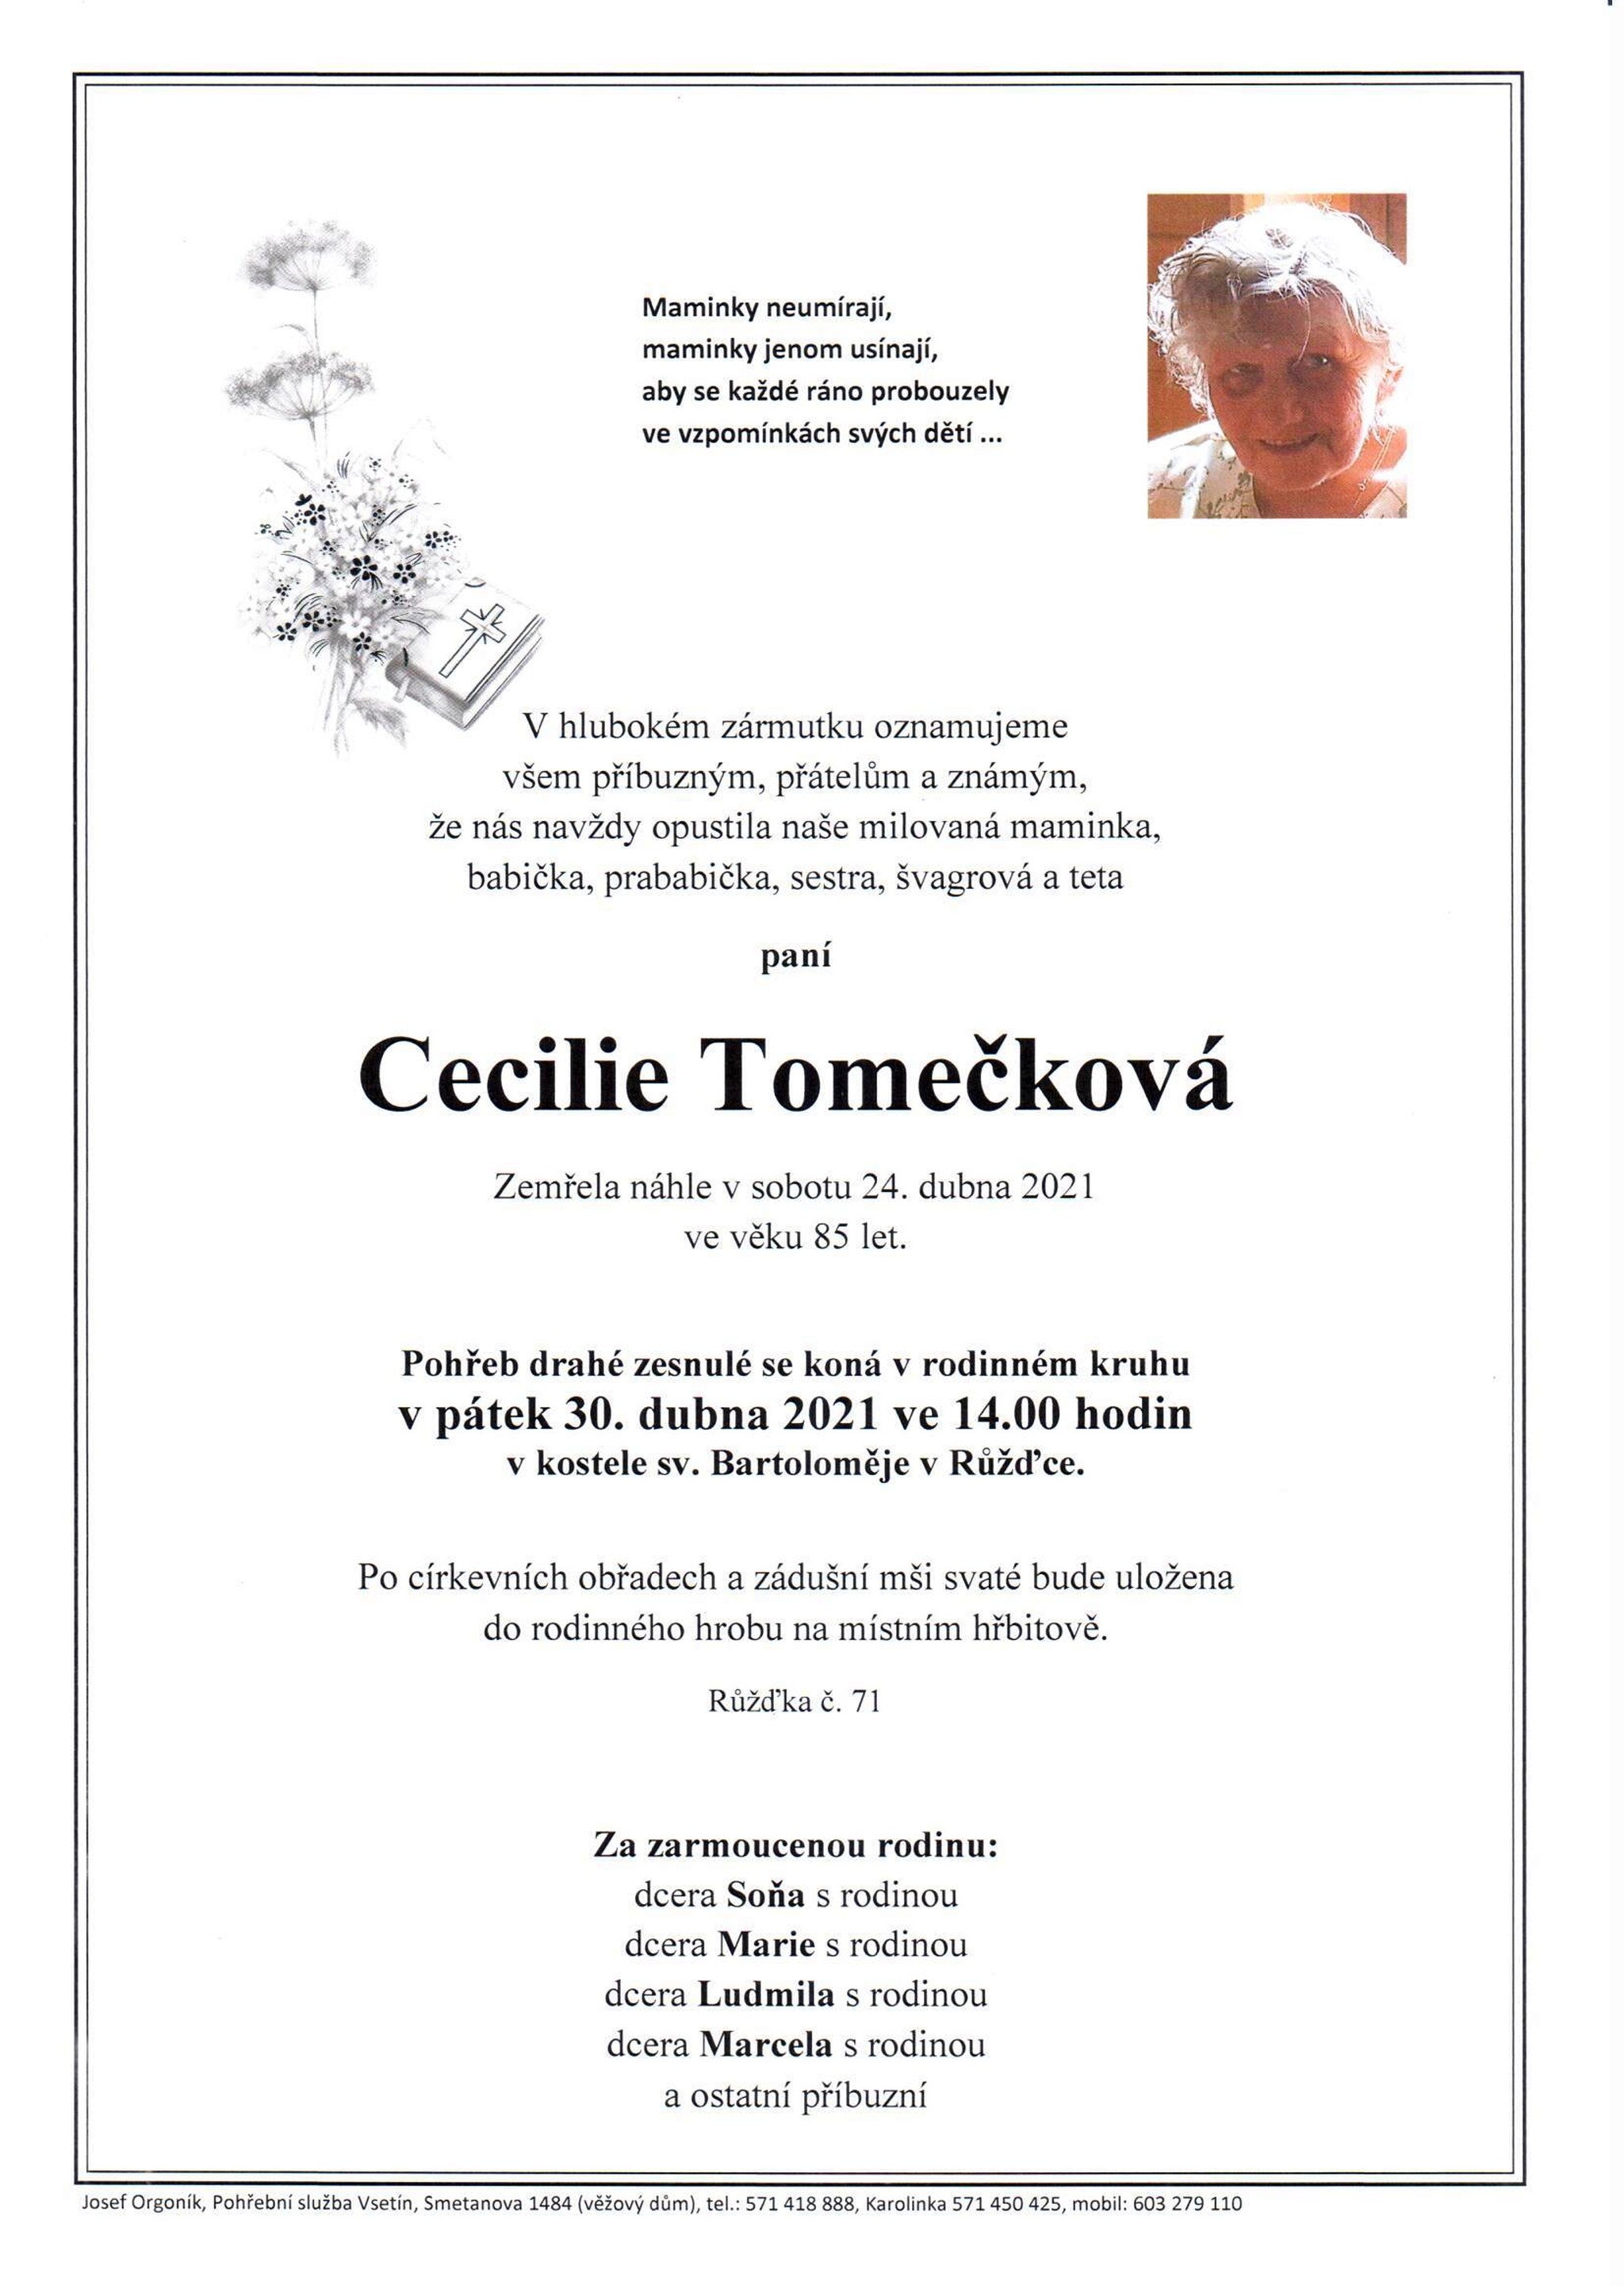 Cecilie Tomečková